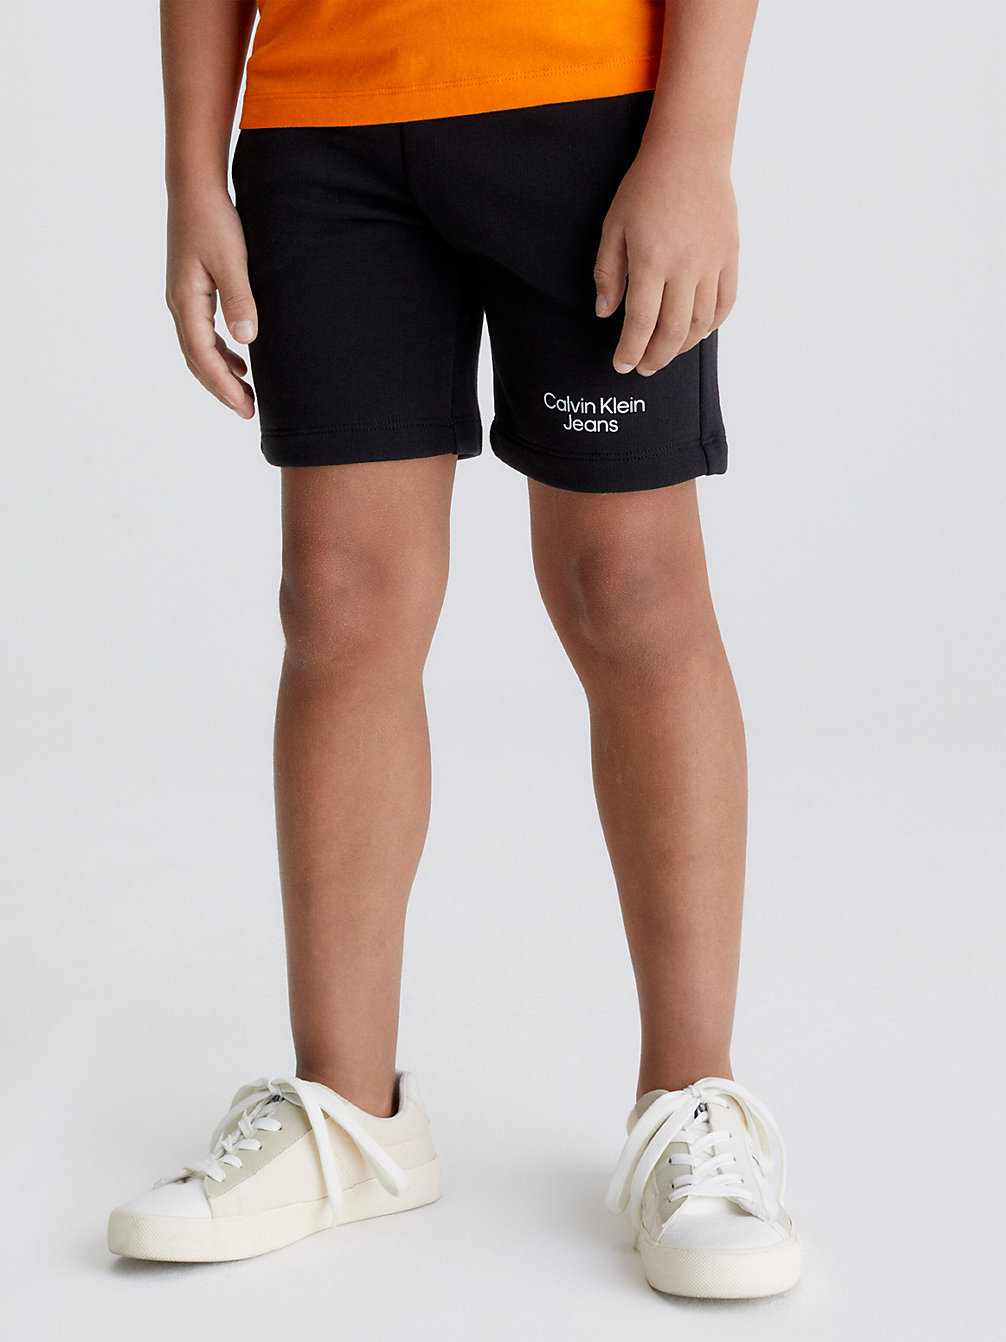 CK BLACK > Облегающие тренировочные шорты > undefined boys - Calvin Klein